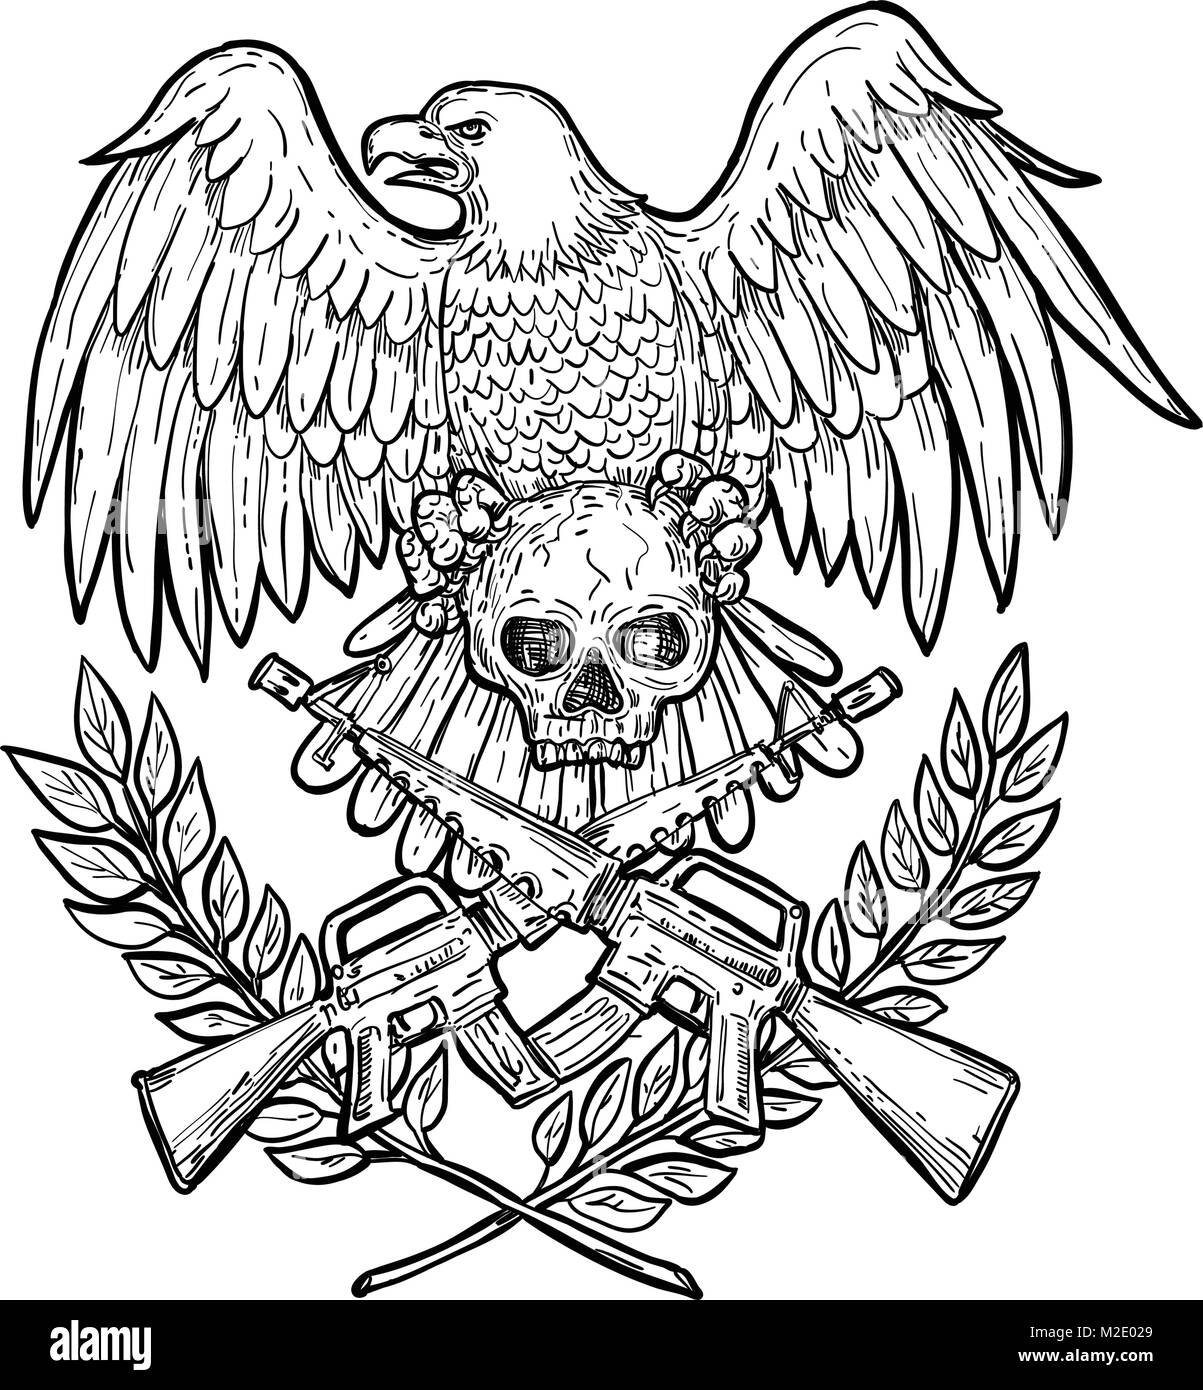 Zeichnung Skizze stil Abbildung eines Weißkopfseeadler mit Flügeln spead ein Totenkopf mit gekreuzten armalite Sturmgewehr und Lorbeerblatt auf Stock Vektor